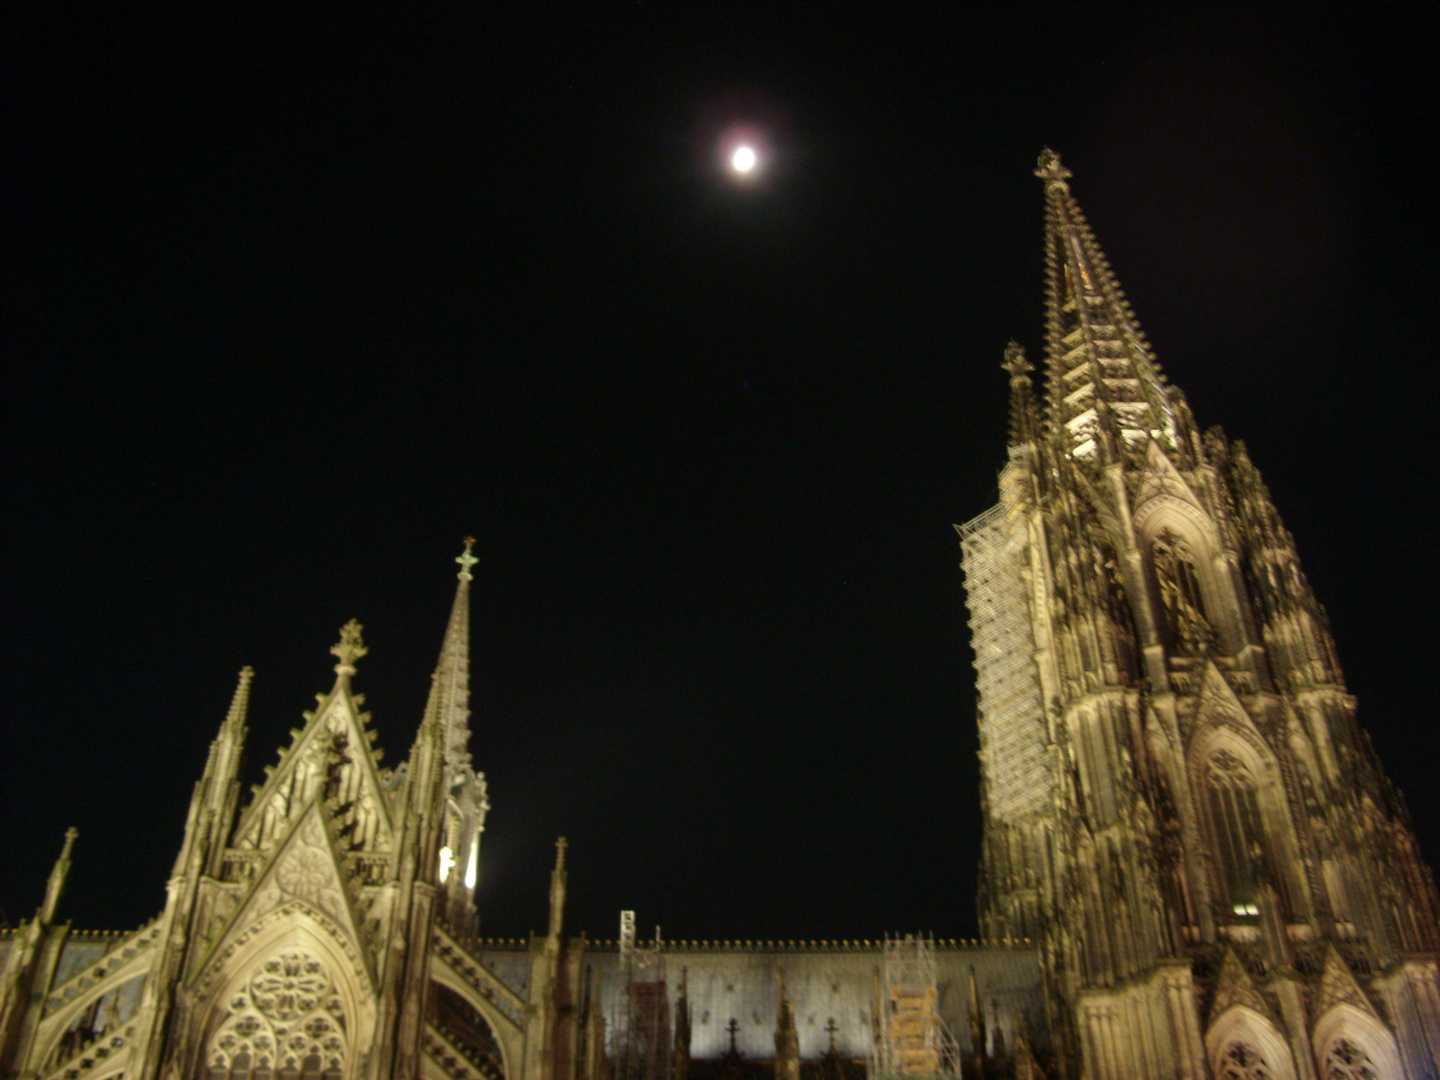 Mond über dem Kölner Dom